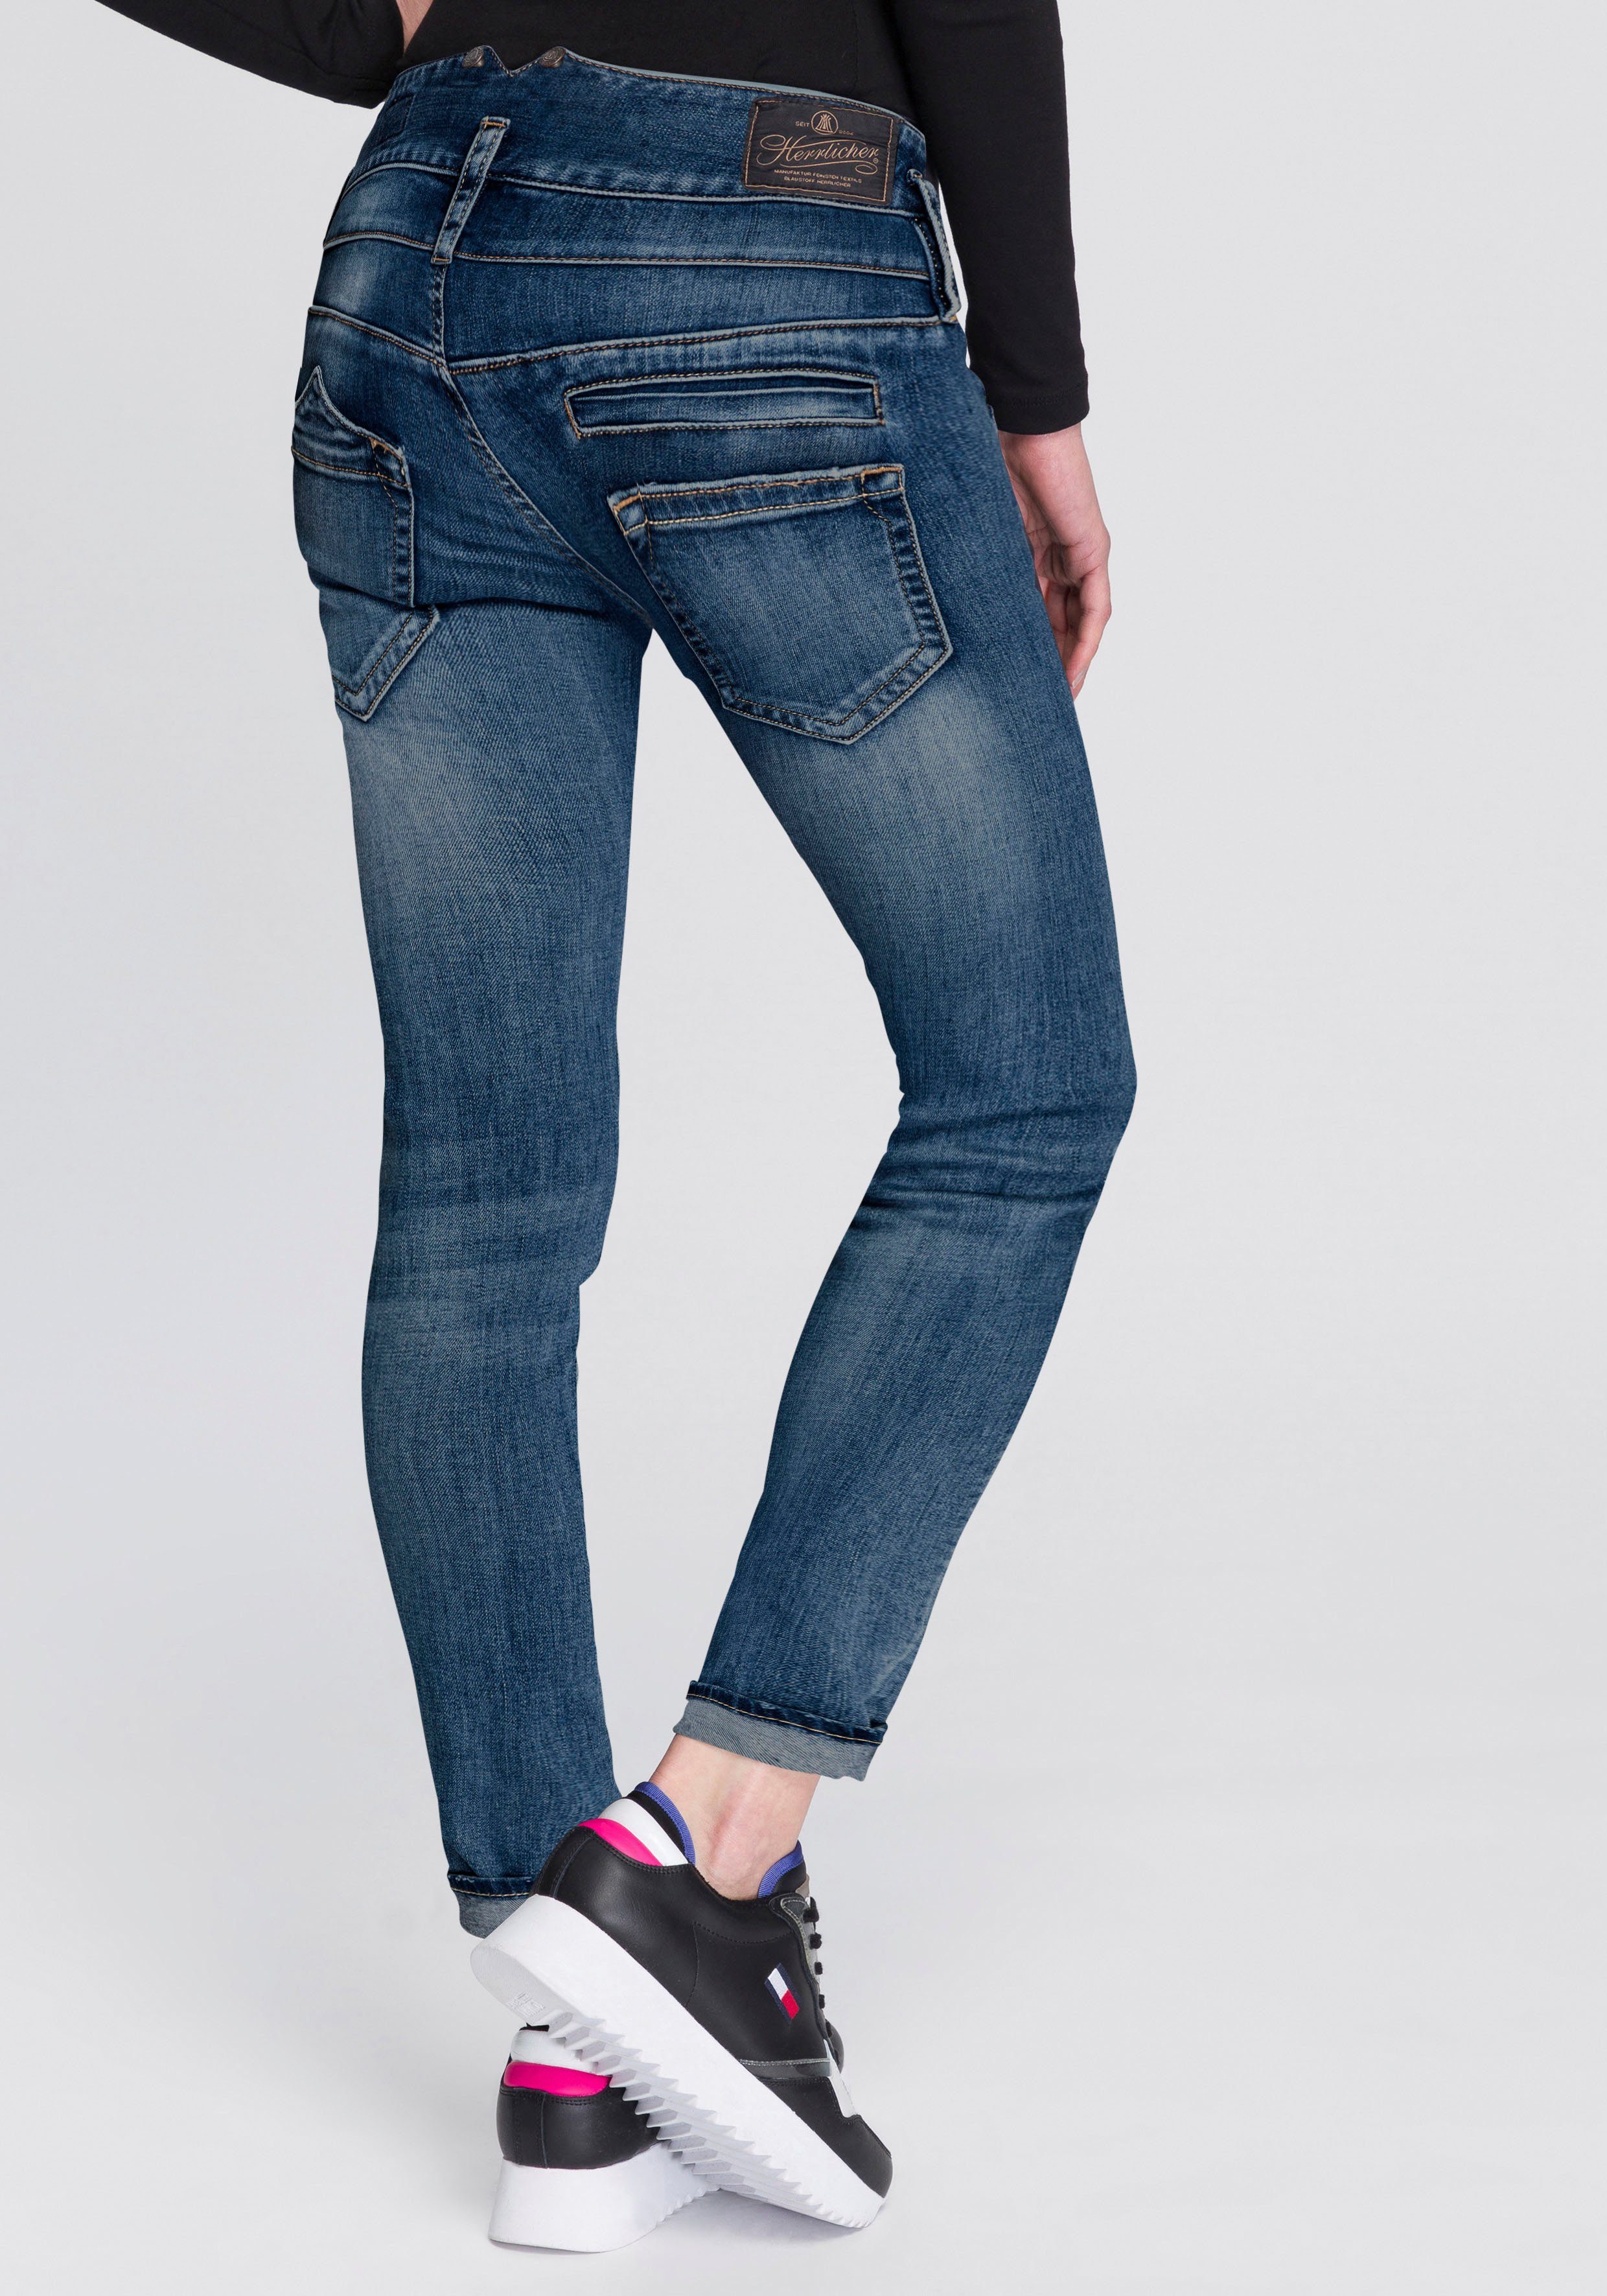 Herrlicher Slim-fit-Jeans »PITCH SLIM ORGANIC DENIM« umweltfreundlich dank  Kitotex Technology online kaufen | OTTO